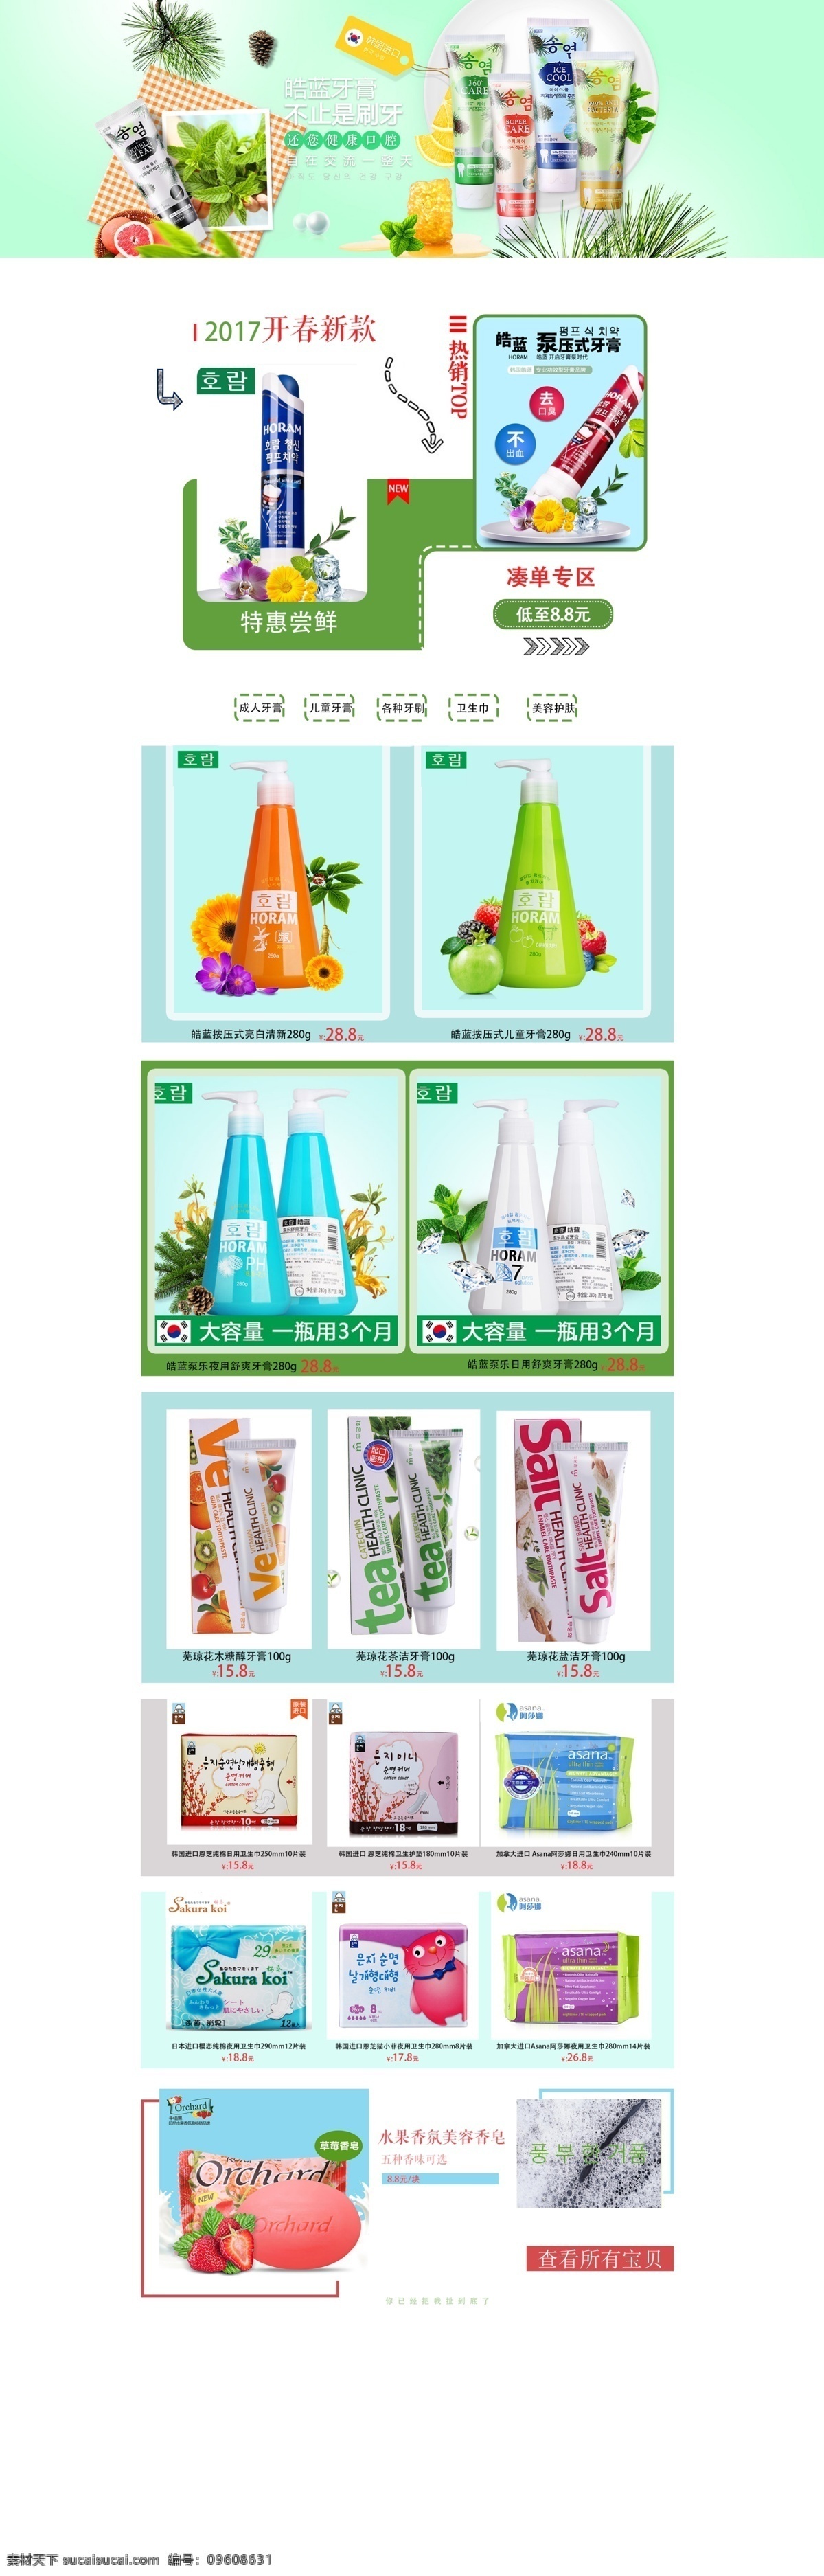 日用卫生用品 进口日化 牙膏 卫生巾 简约 简单